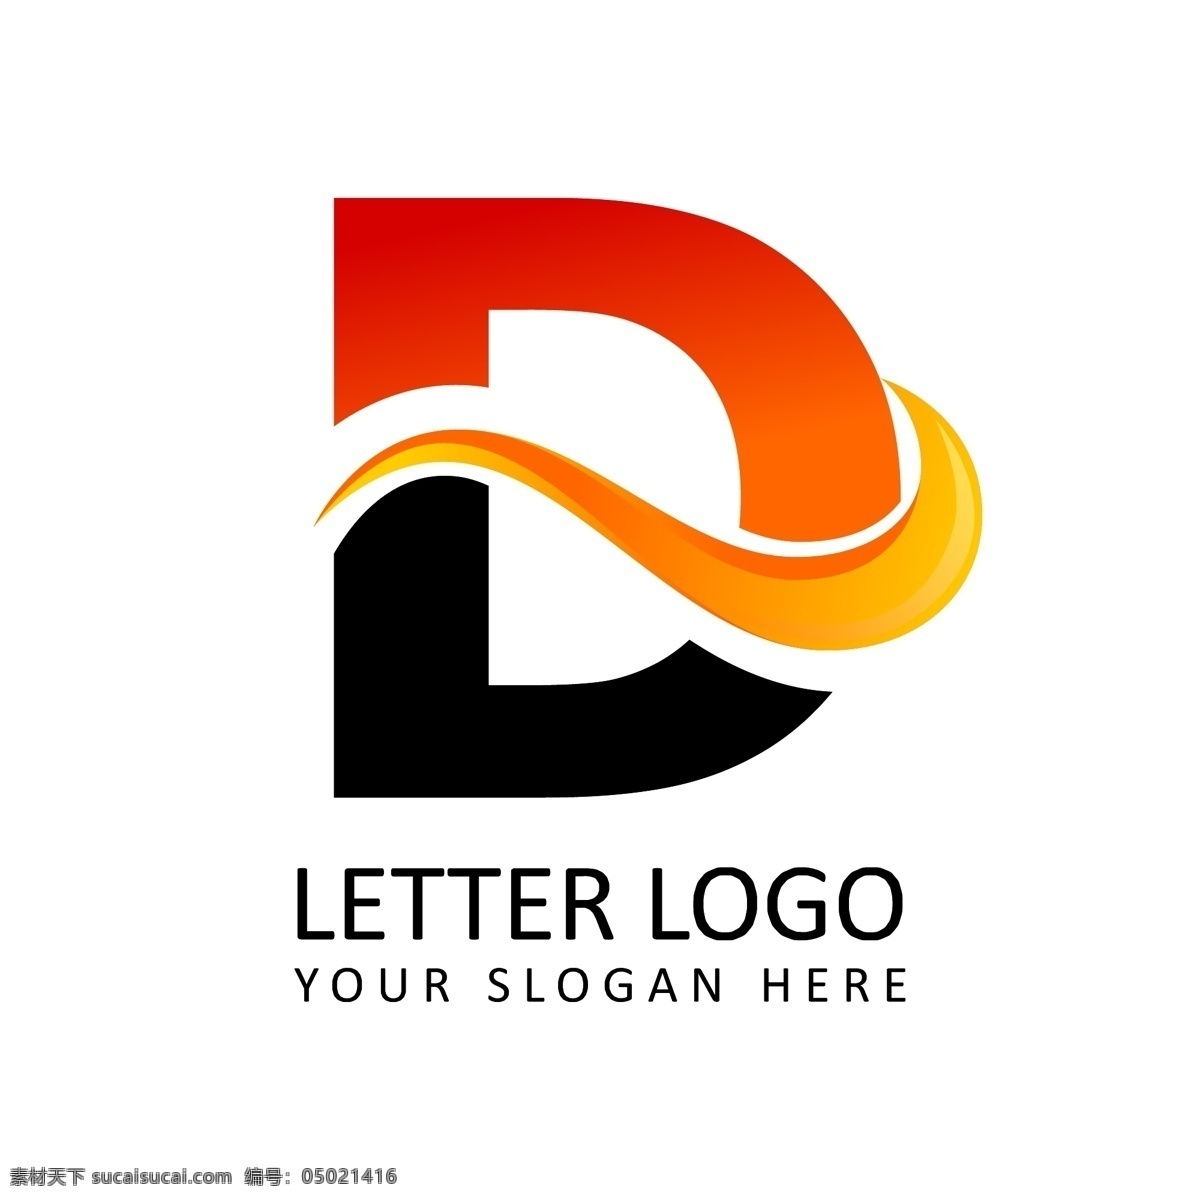 d 字母 造型 logo 互联网 科技 标志 创意 广告 化妆品 科技logo 领域 多用途 标识 公司 简约 企业标识 企业logo 珠宝 能源 工业 服装